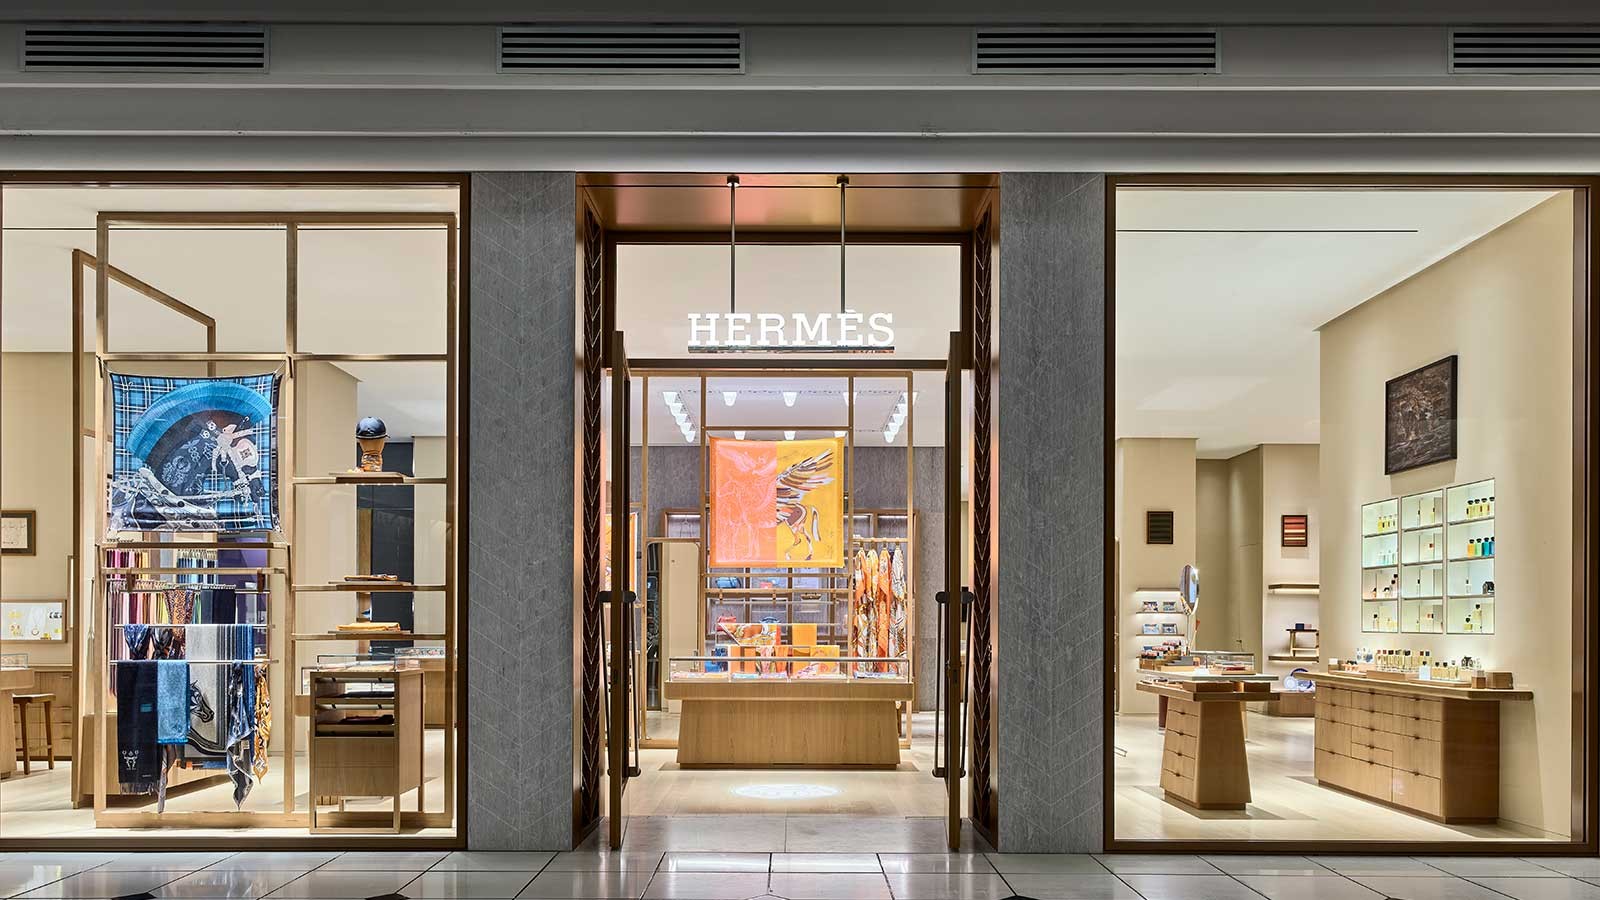 Bất chấp đại dịch, doanh thu của thương hiệu xa xỉ Hermès tăng trưởng mạnh - ảnh 3